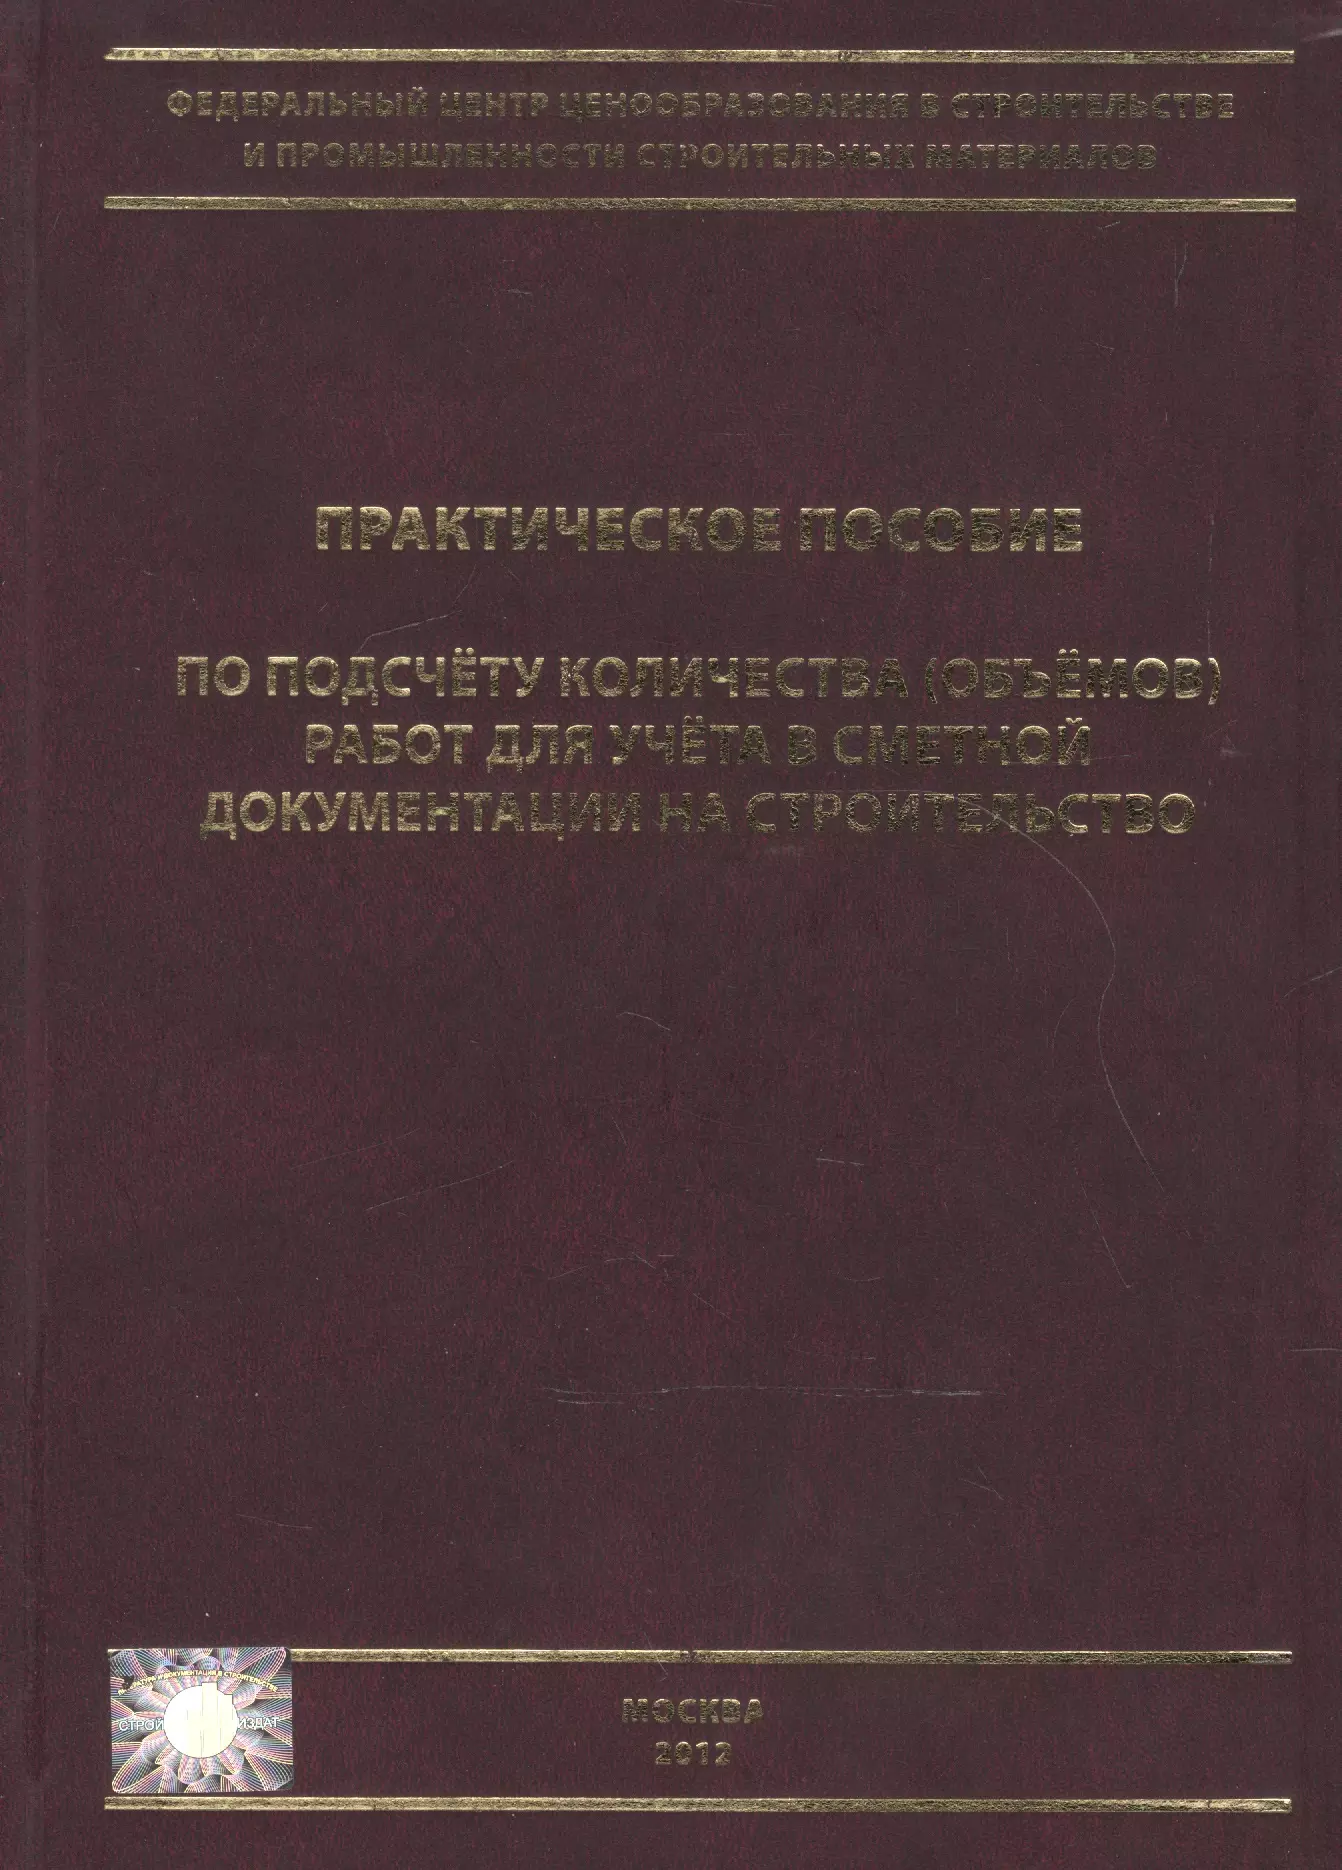 Симанович В. М. - Практическое пособие по подсчету количества (объемов) работ для учета в сметной документации на стро